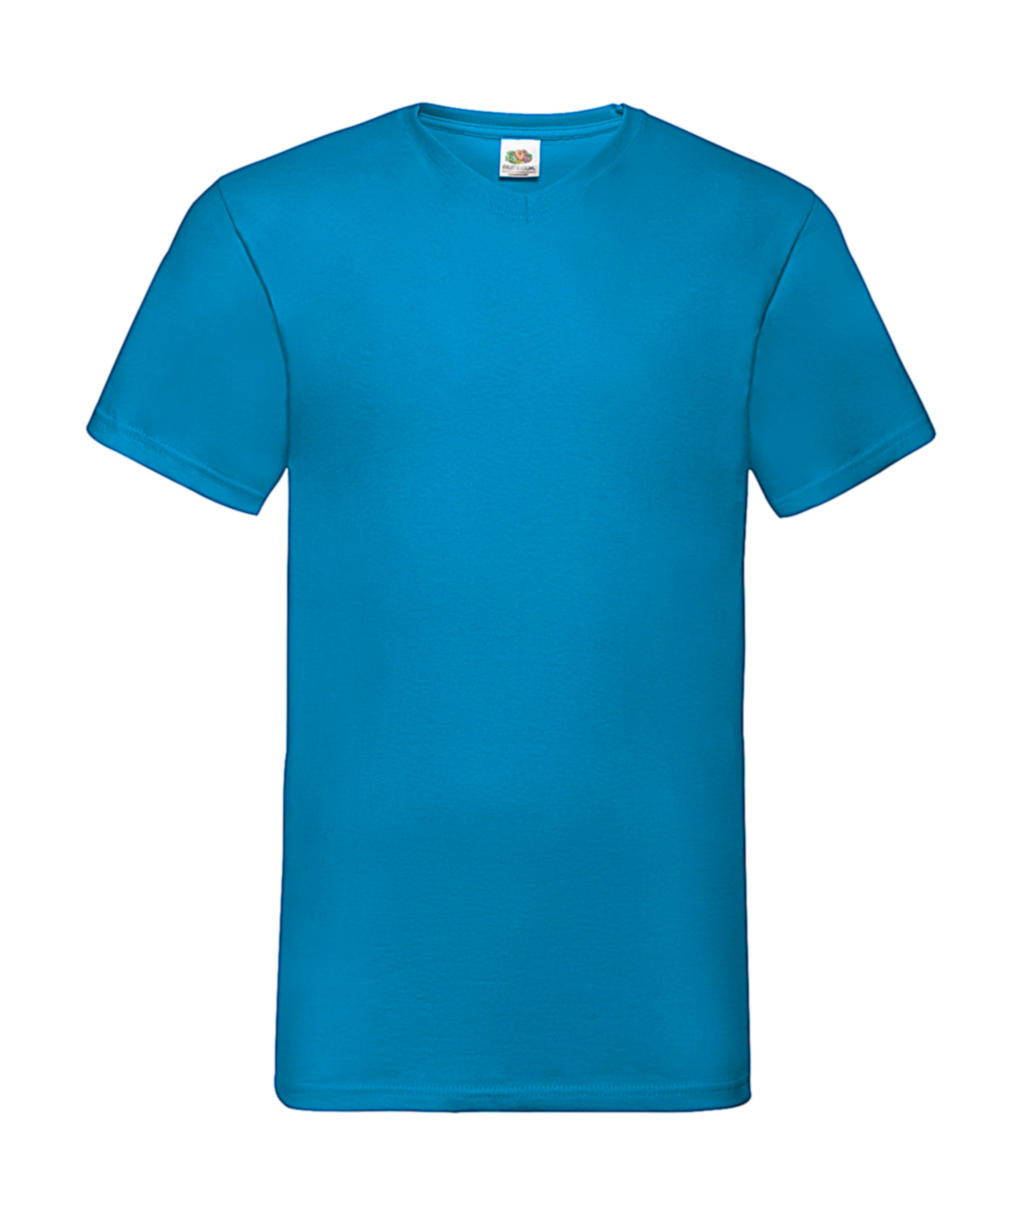 Tričko do V - azure blue